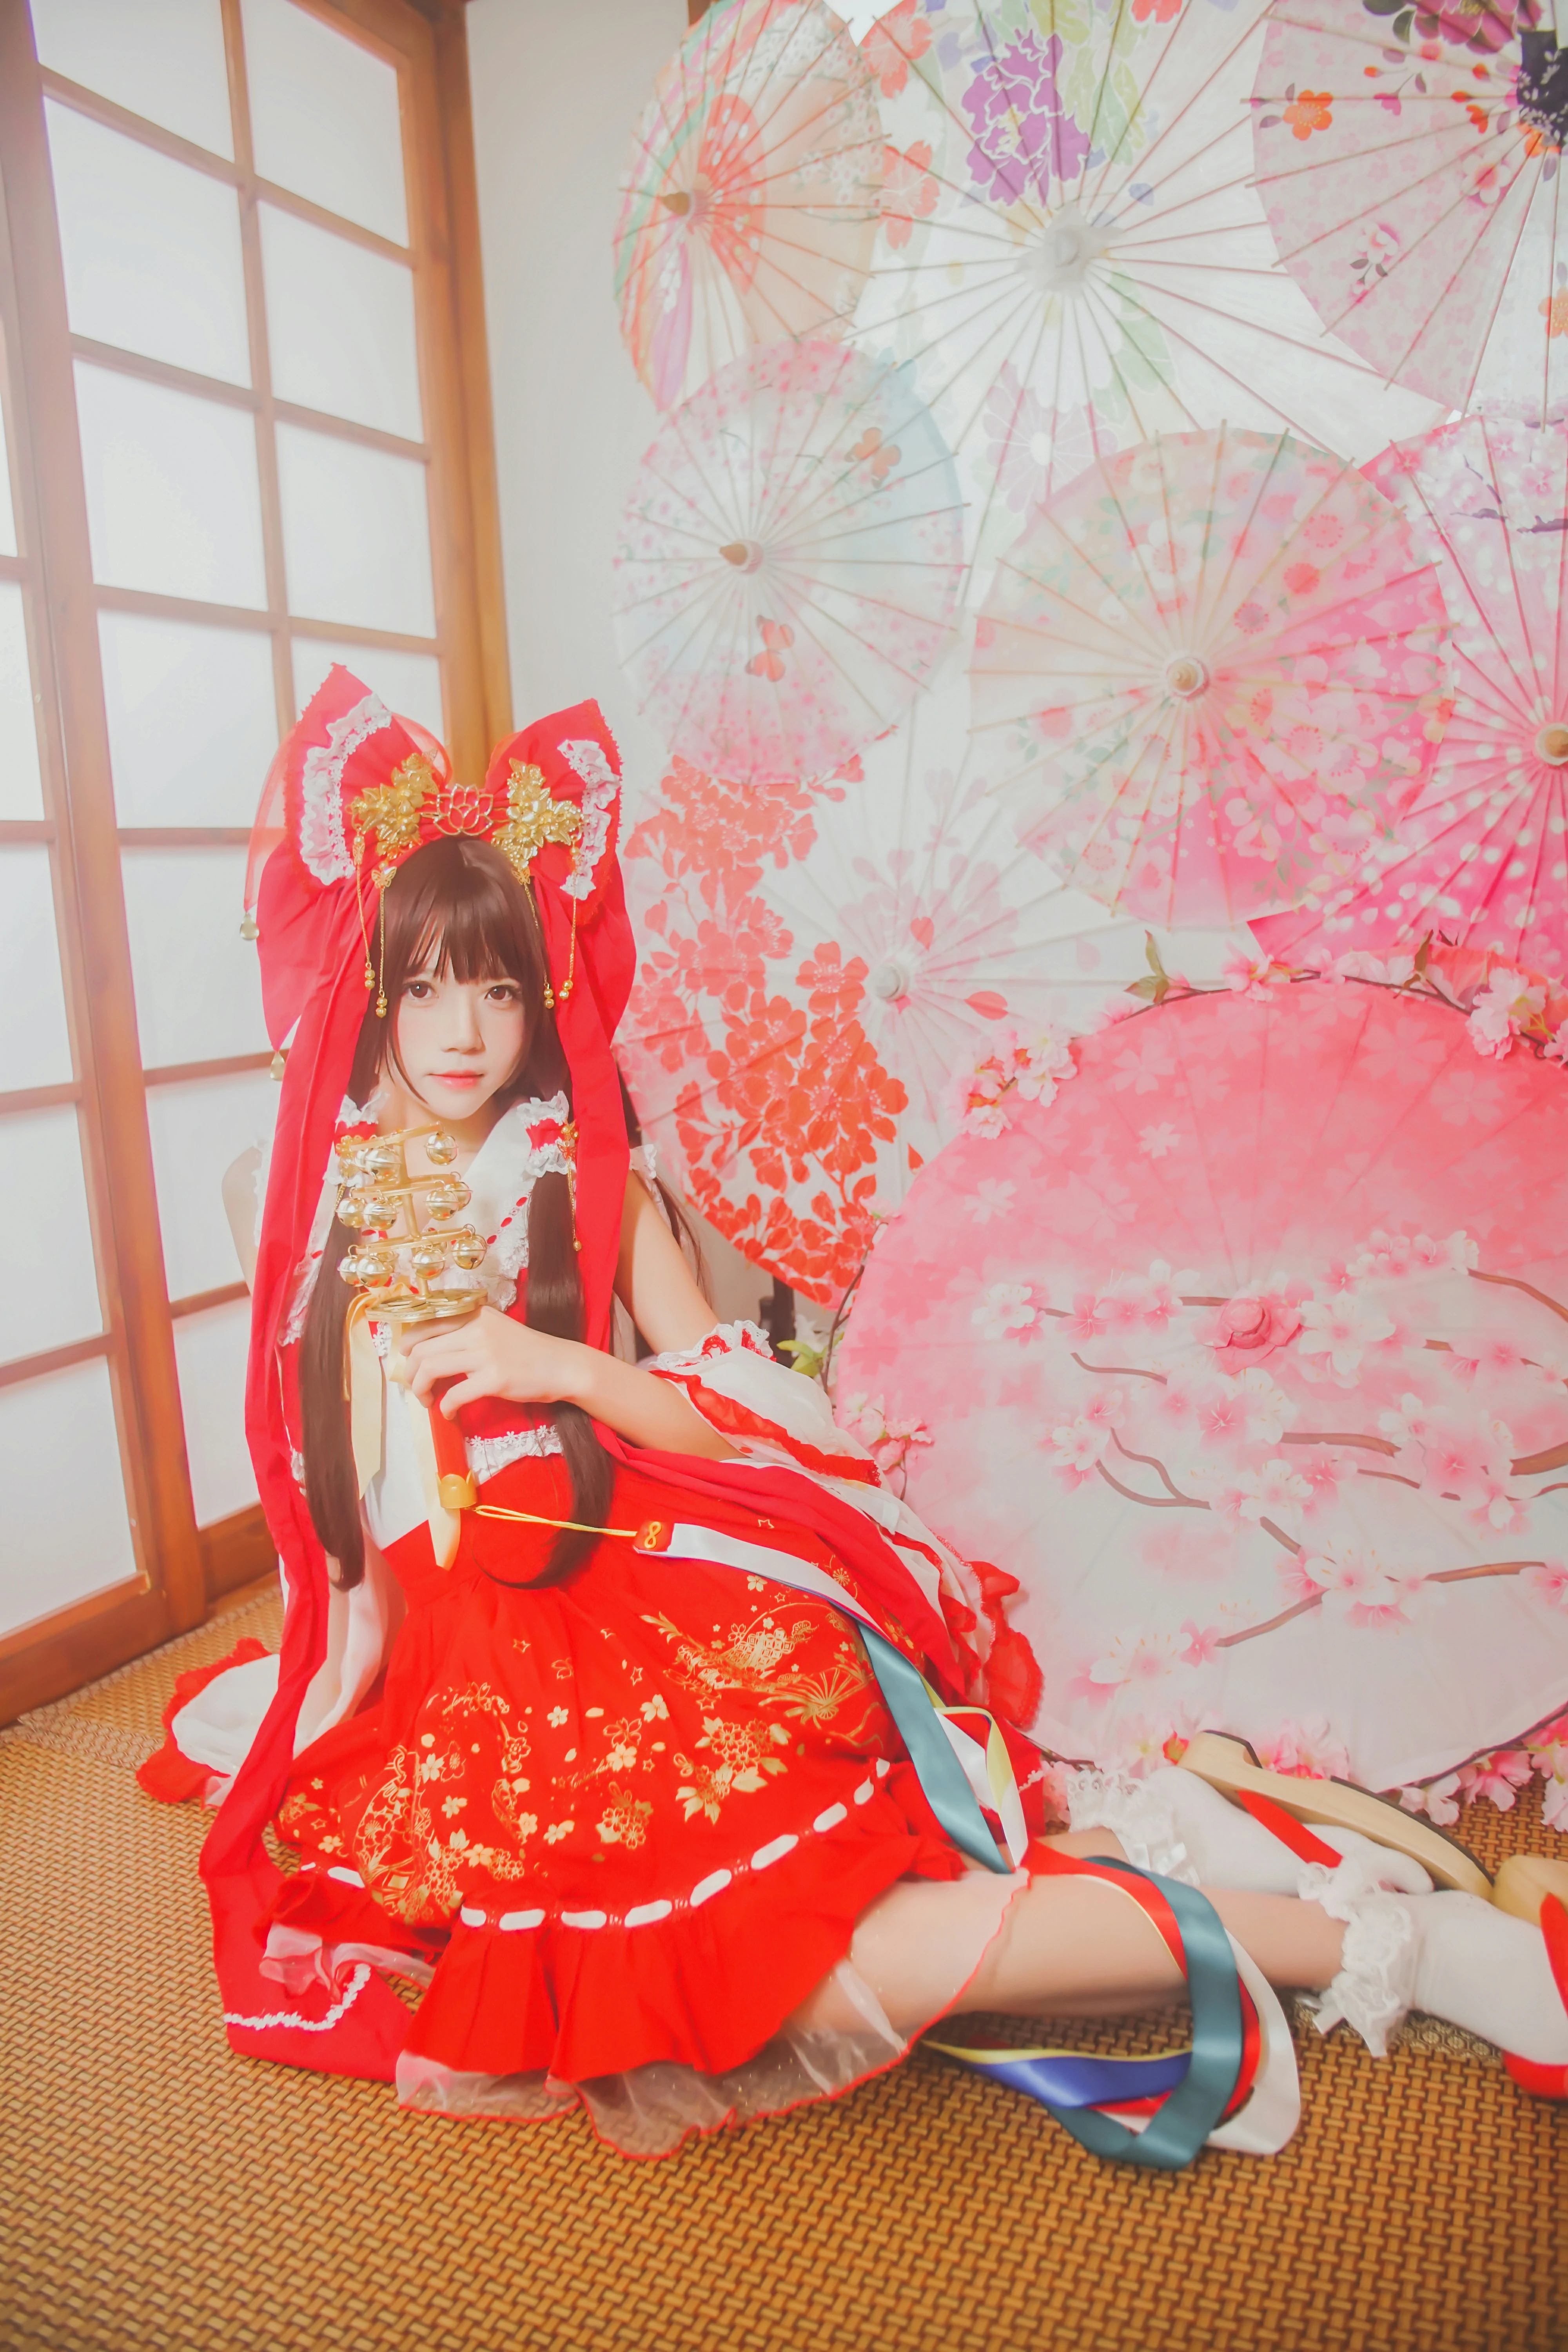 清纯少女小萝莉 桜桃喵 红色连身制服裙 和风写真,0013